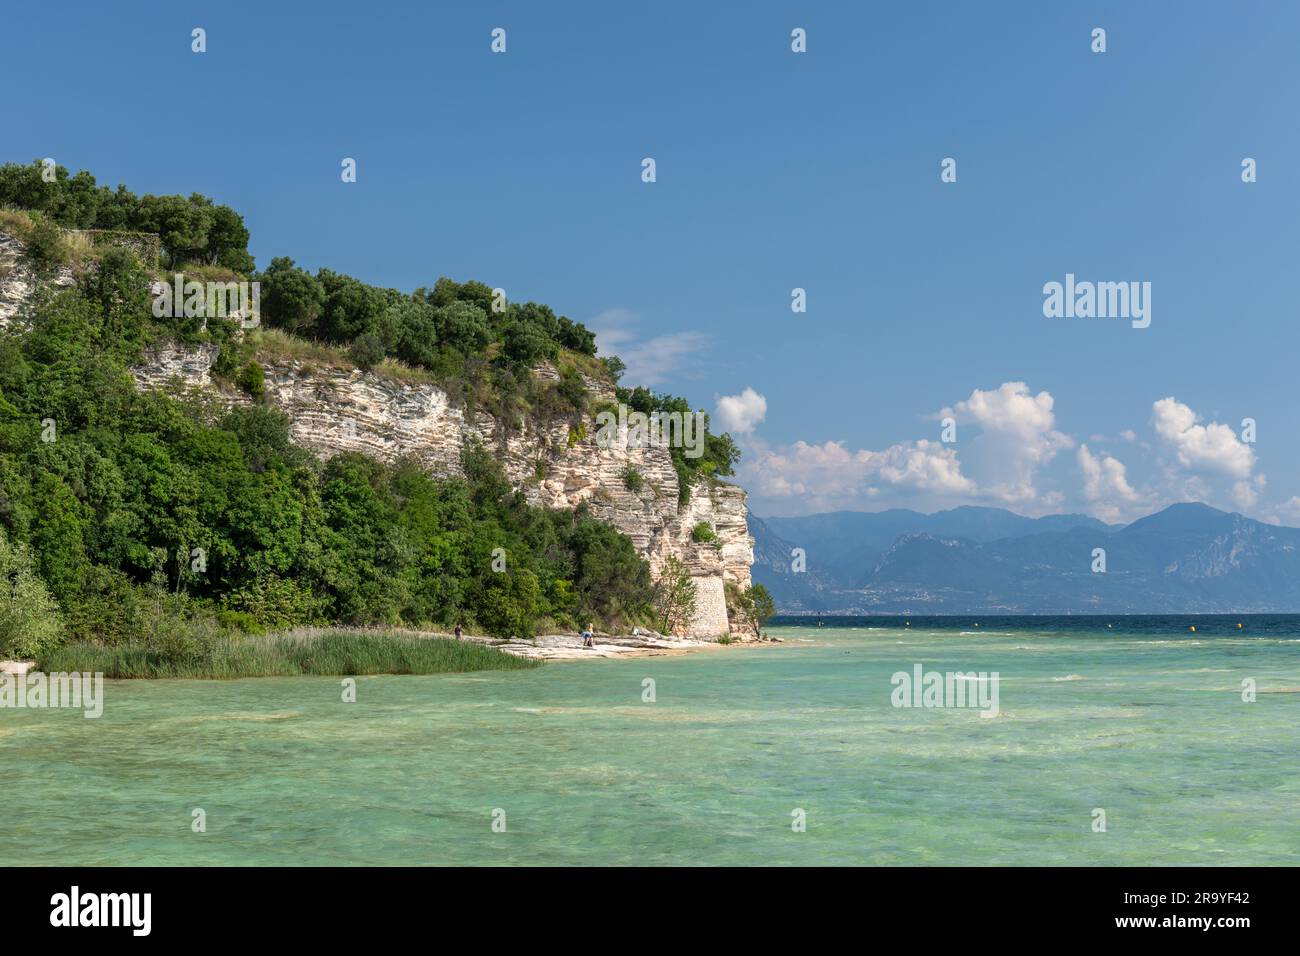 Il bellissimo e pittoresco litorale della penisola di Sirmione. Una spiaggia rocciosa a Sirmione, Lago di Garda, Italia, Europa Foto Stock